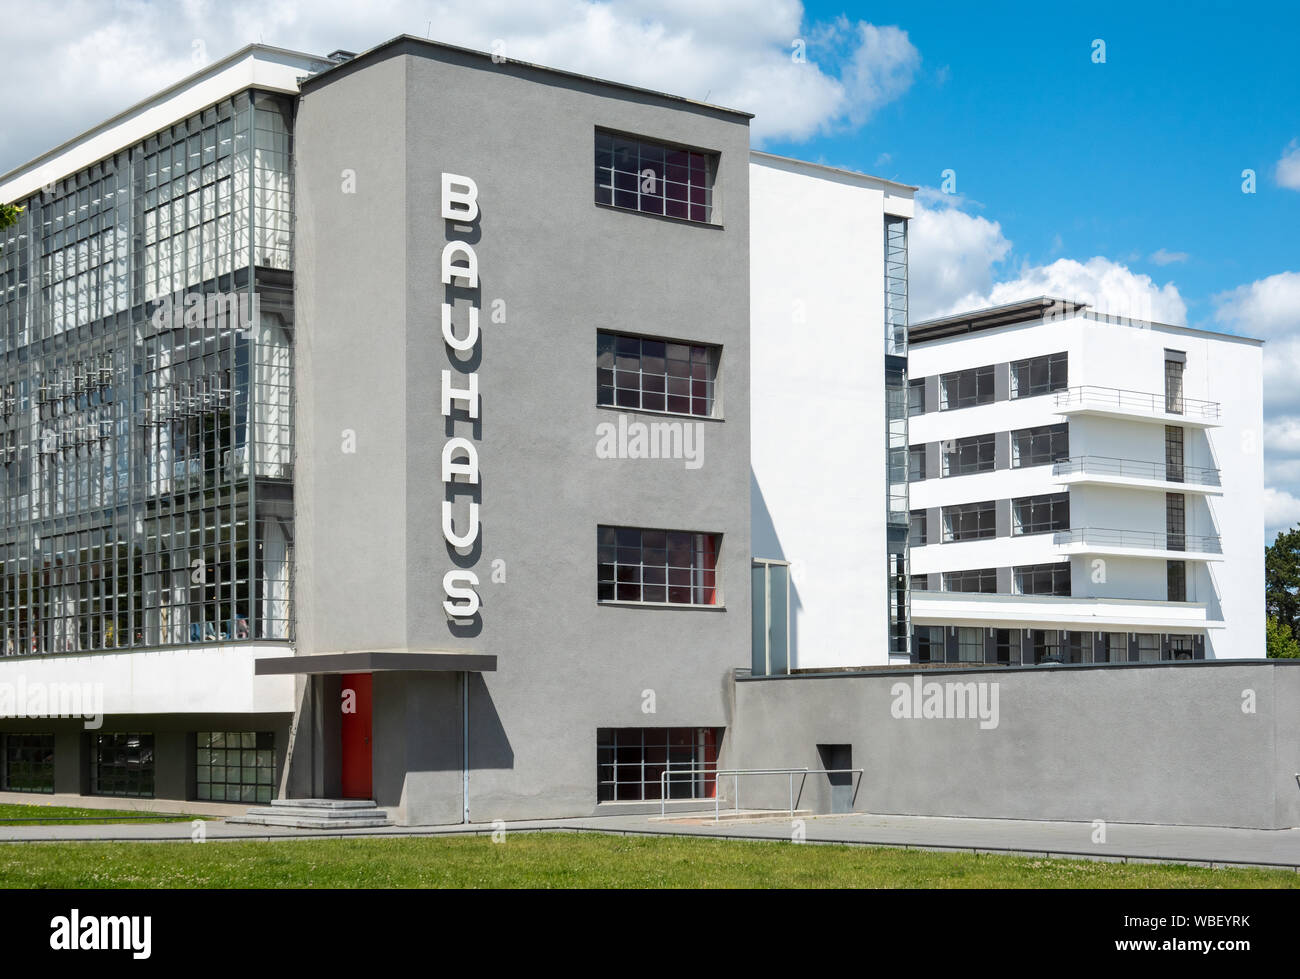 Bauhaus Dessau Exterieur. Das Bauhausgebäude in Dessau, 1925 von Walter Gropius 1926 konzipiert. Unesco-Weltkulturerbe. Stockfoto